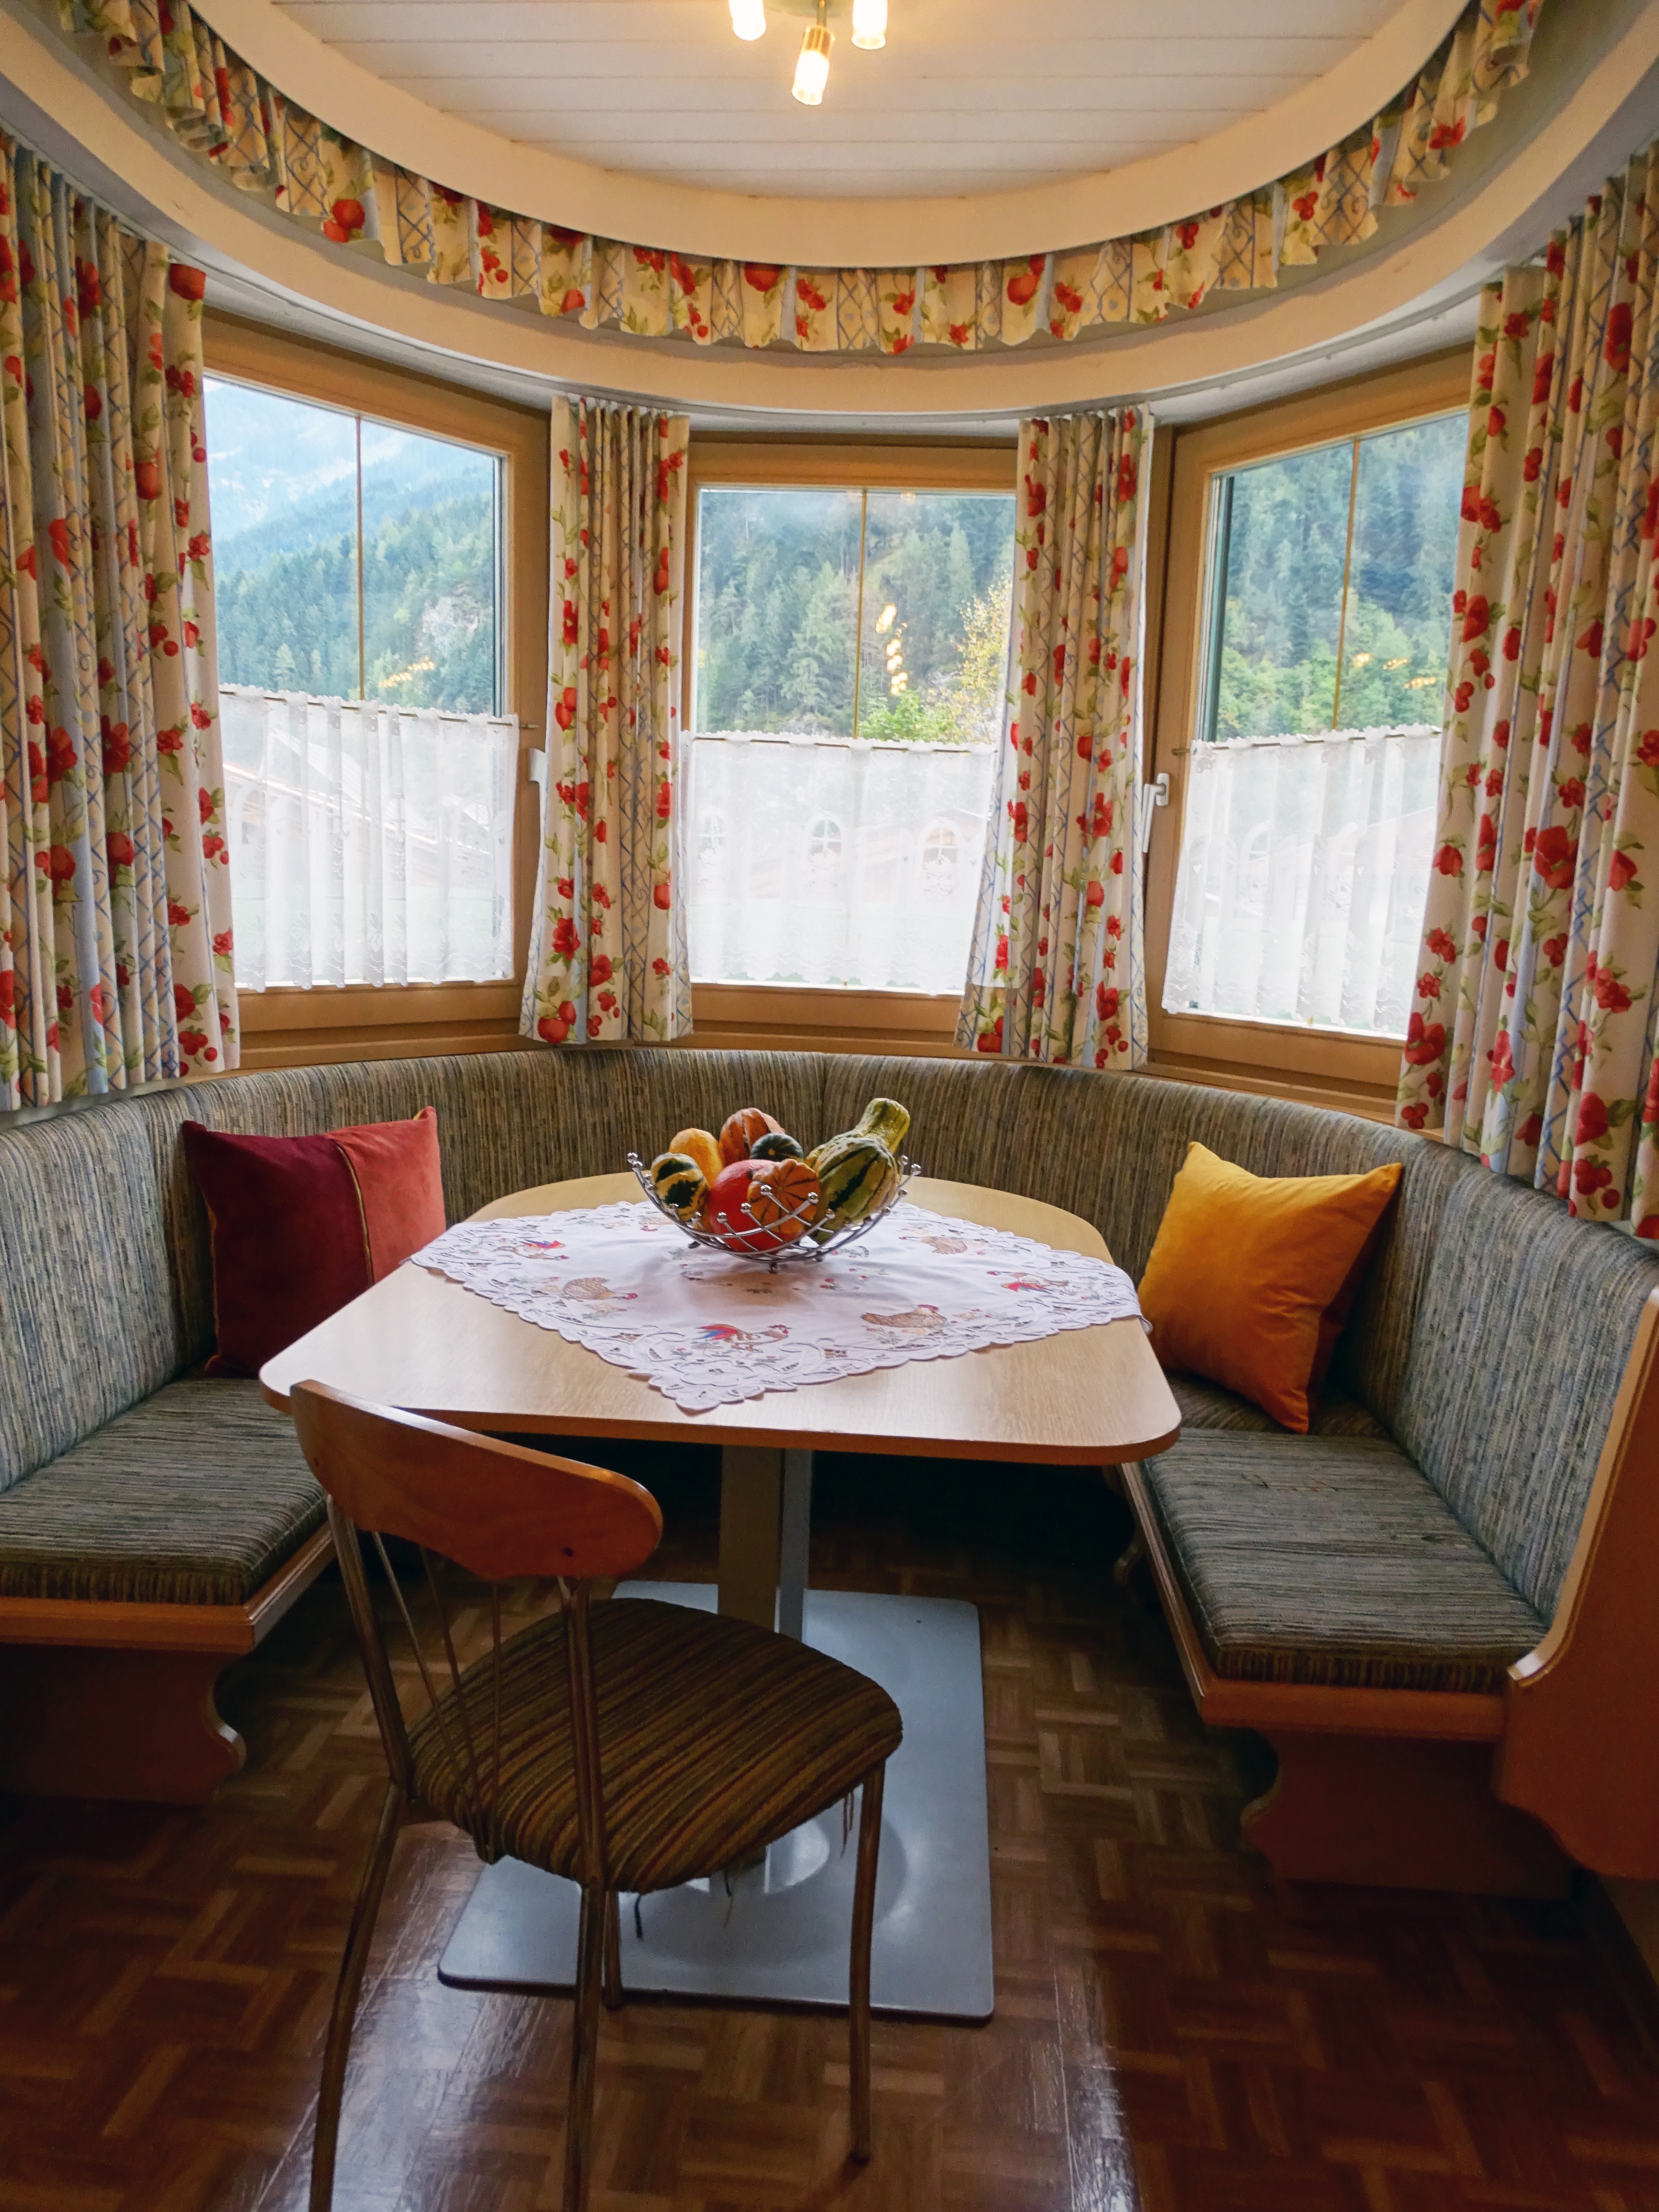 Appartementhaus Zillertal: Ferienwohnung für 2 Personen - Essecke (Beispiel)